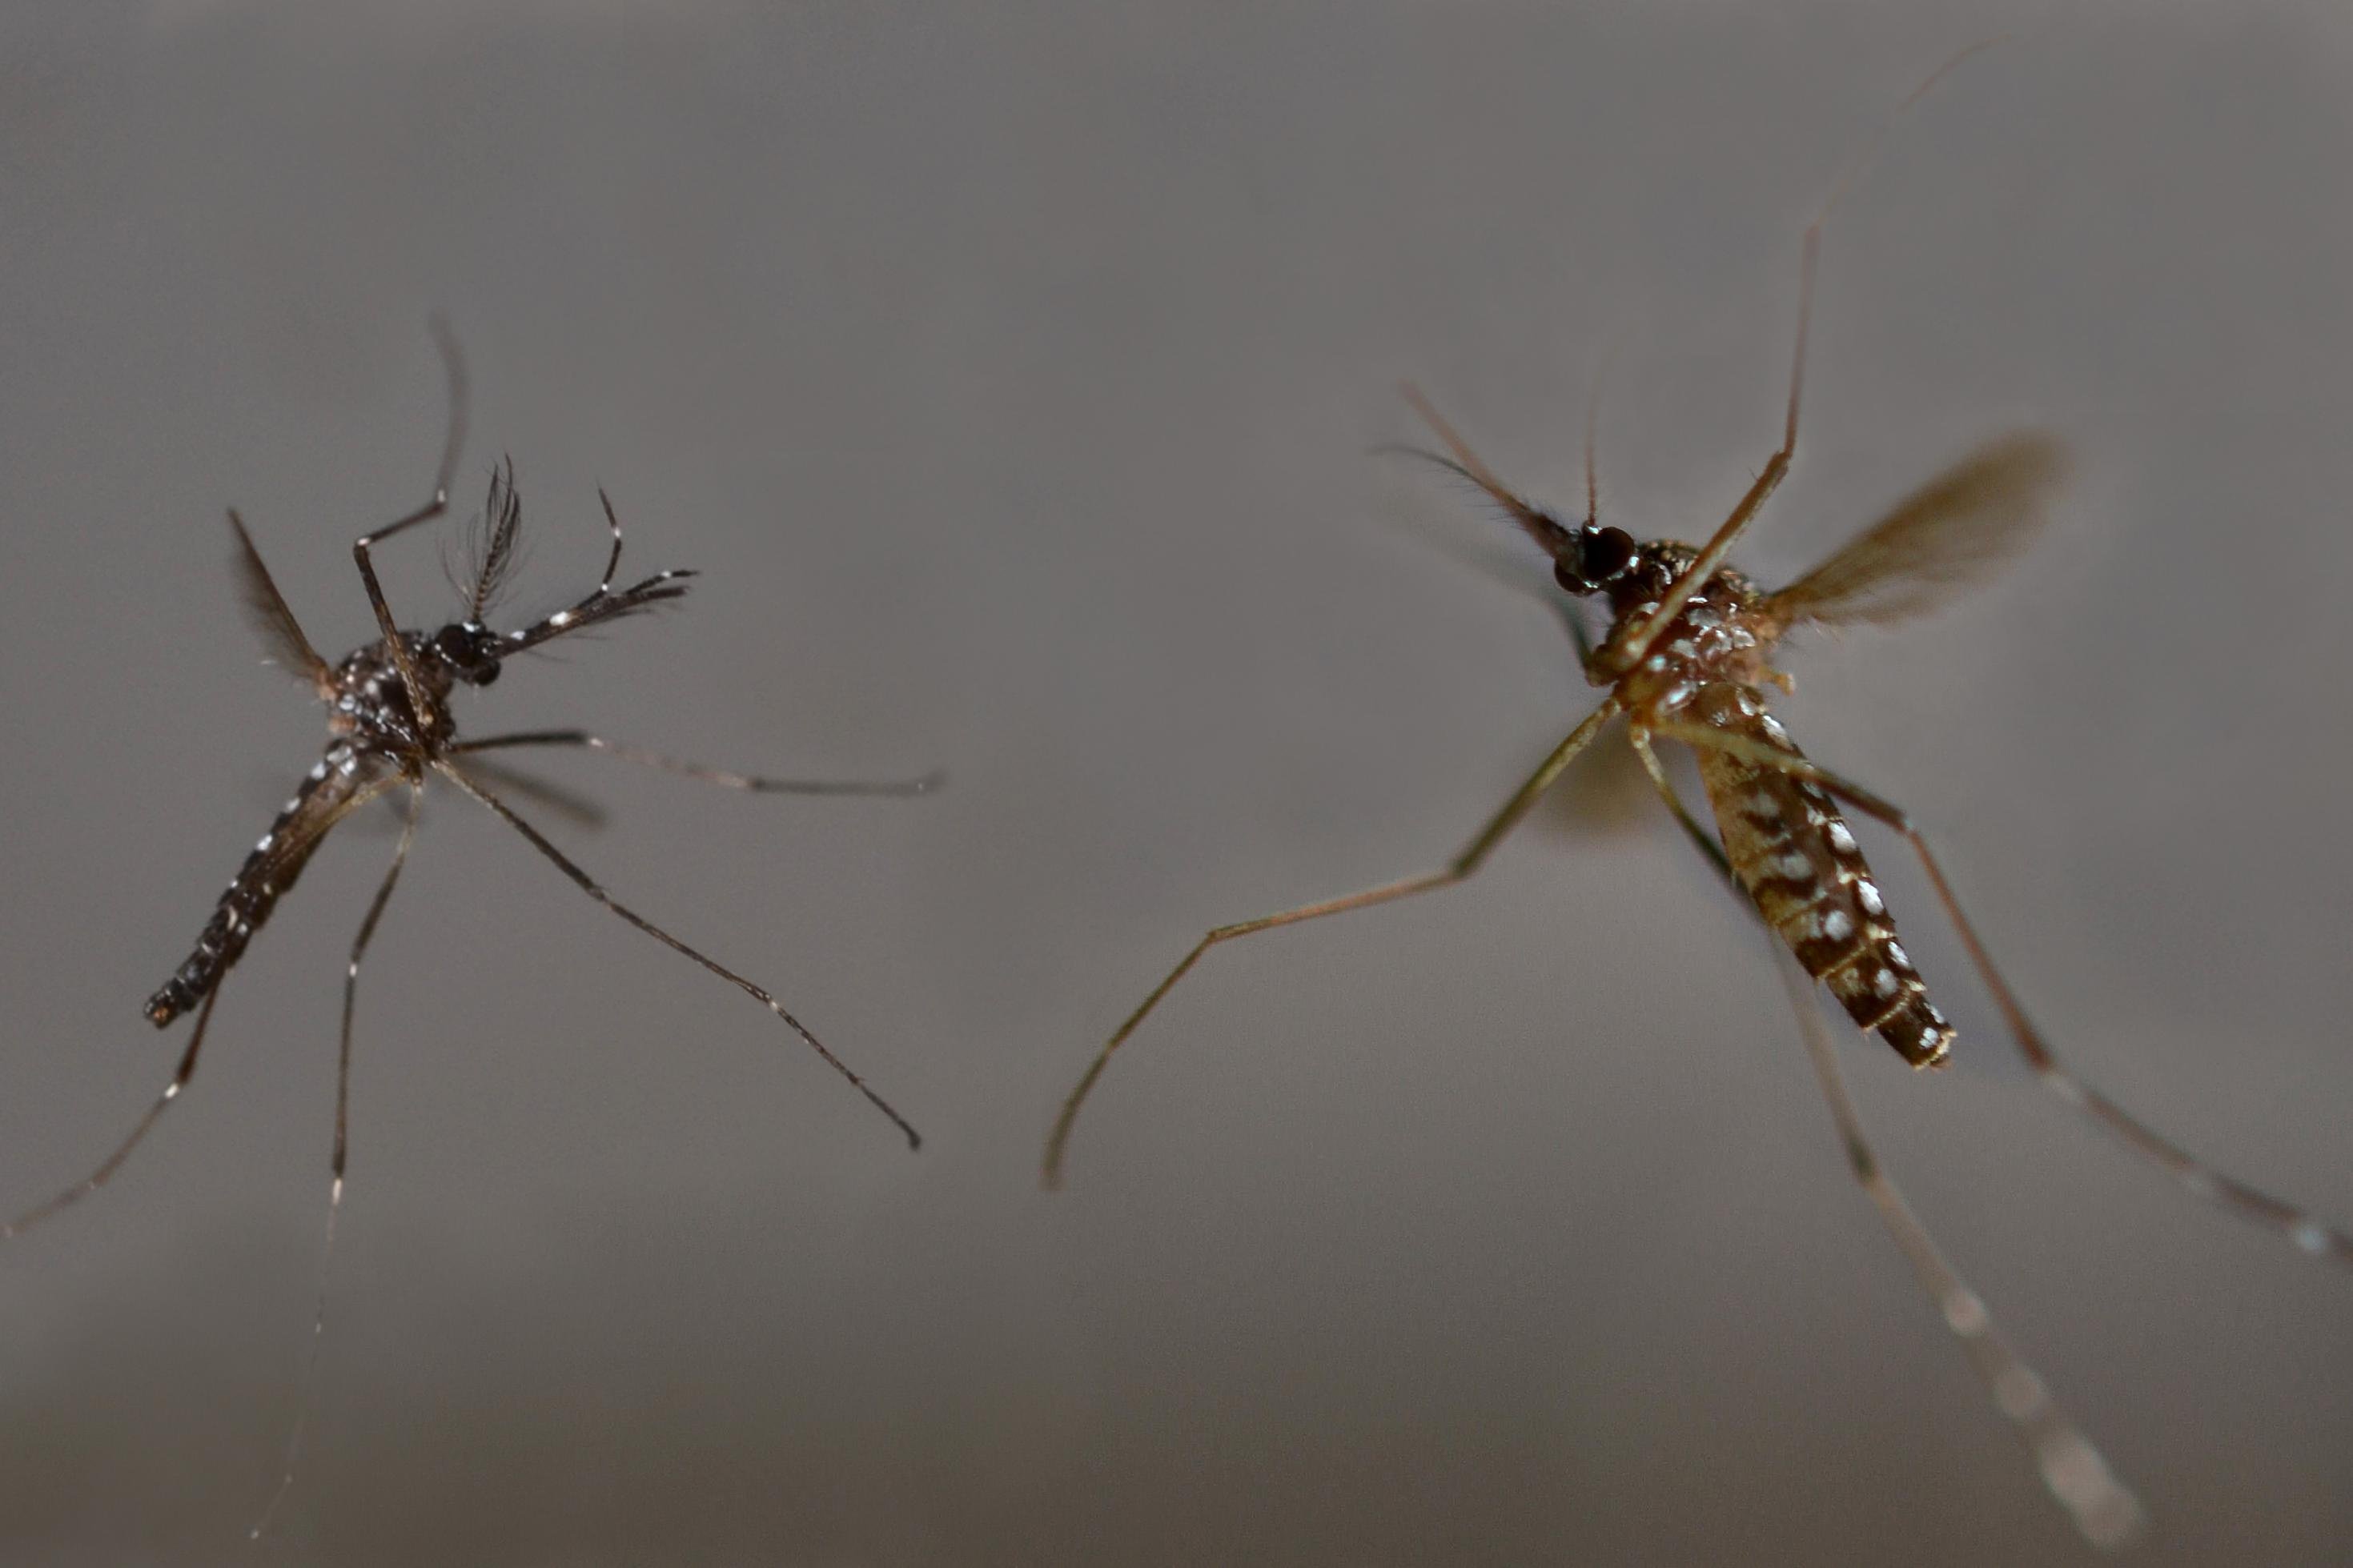 Zwei fliegende Mücken sind im Detail zu erkennen, Männchen und Weibchen der aedes aegypti